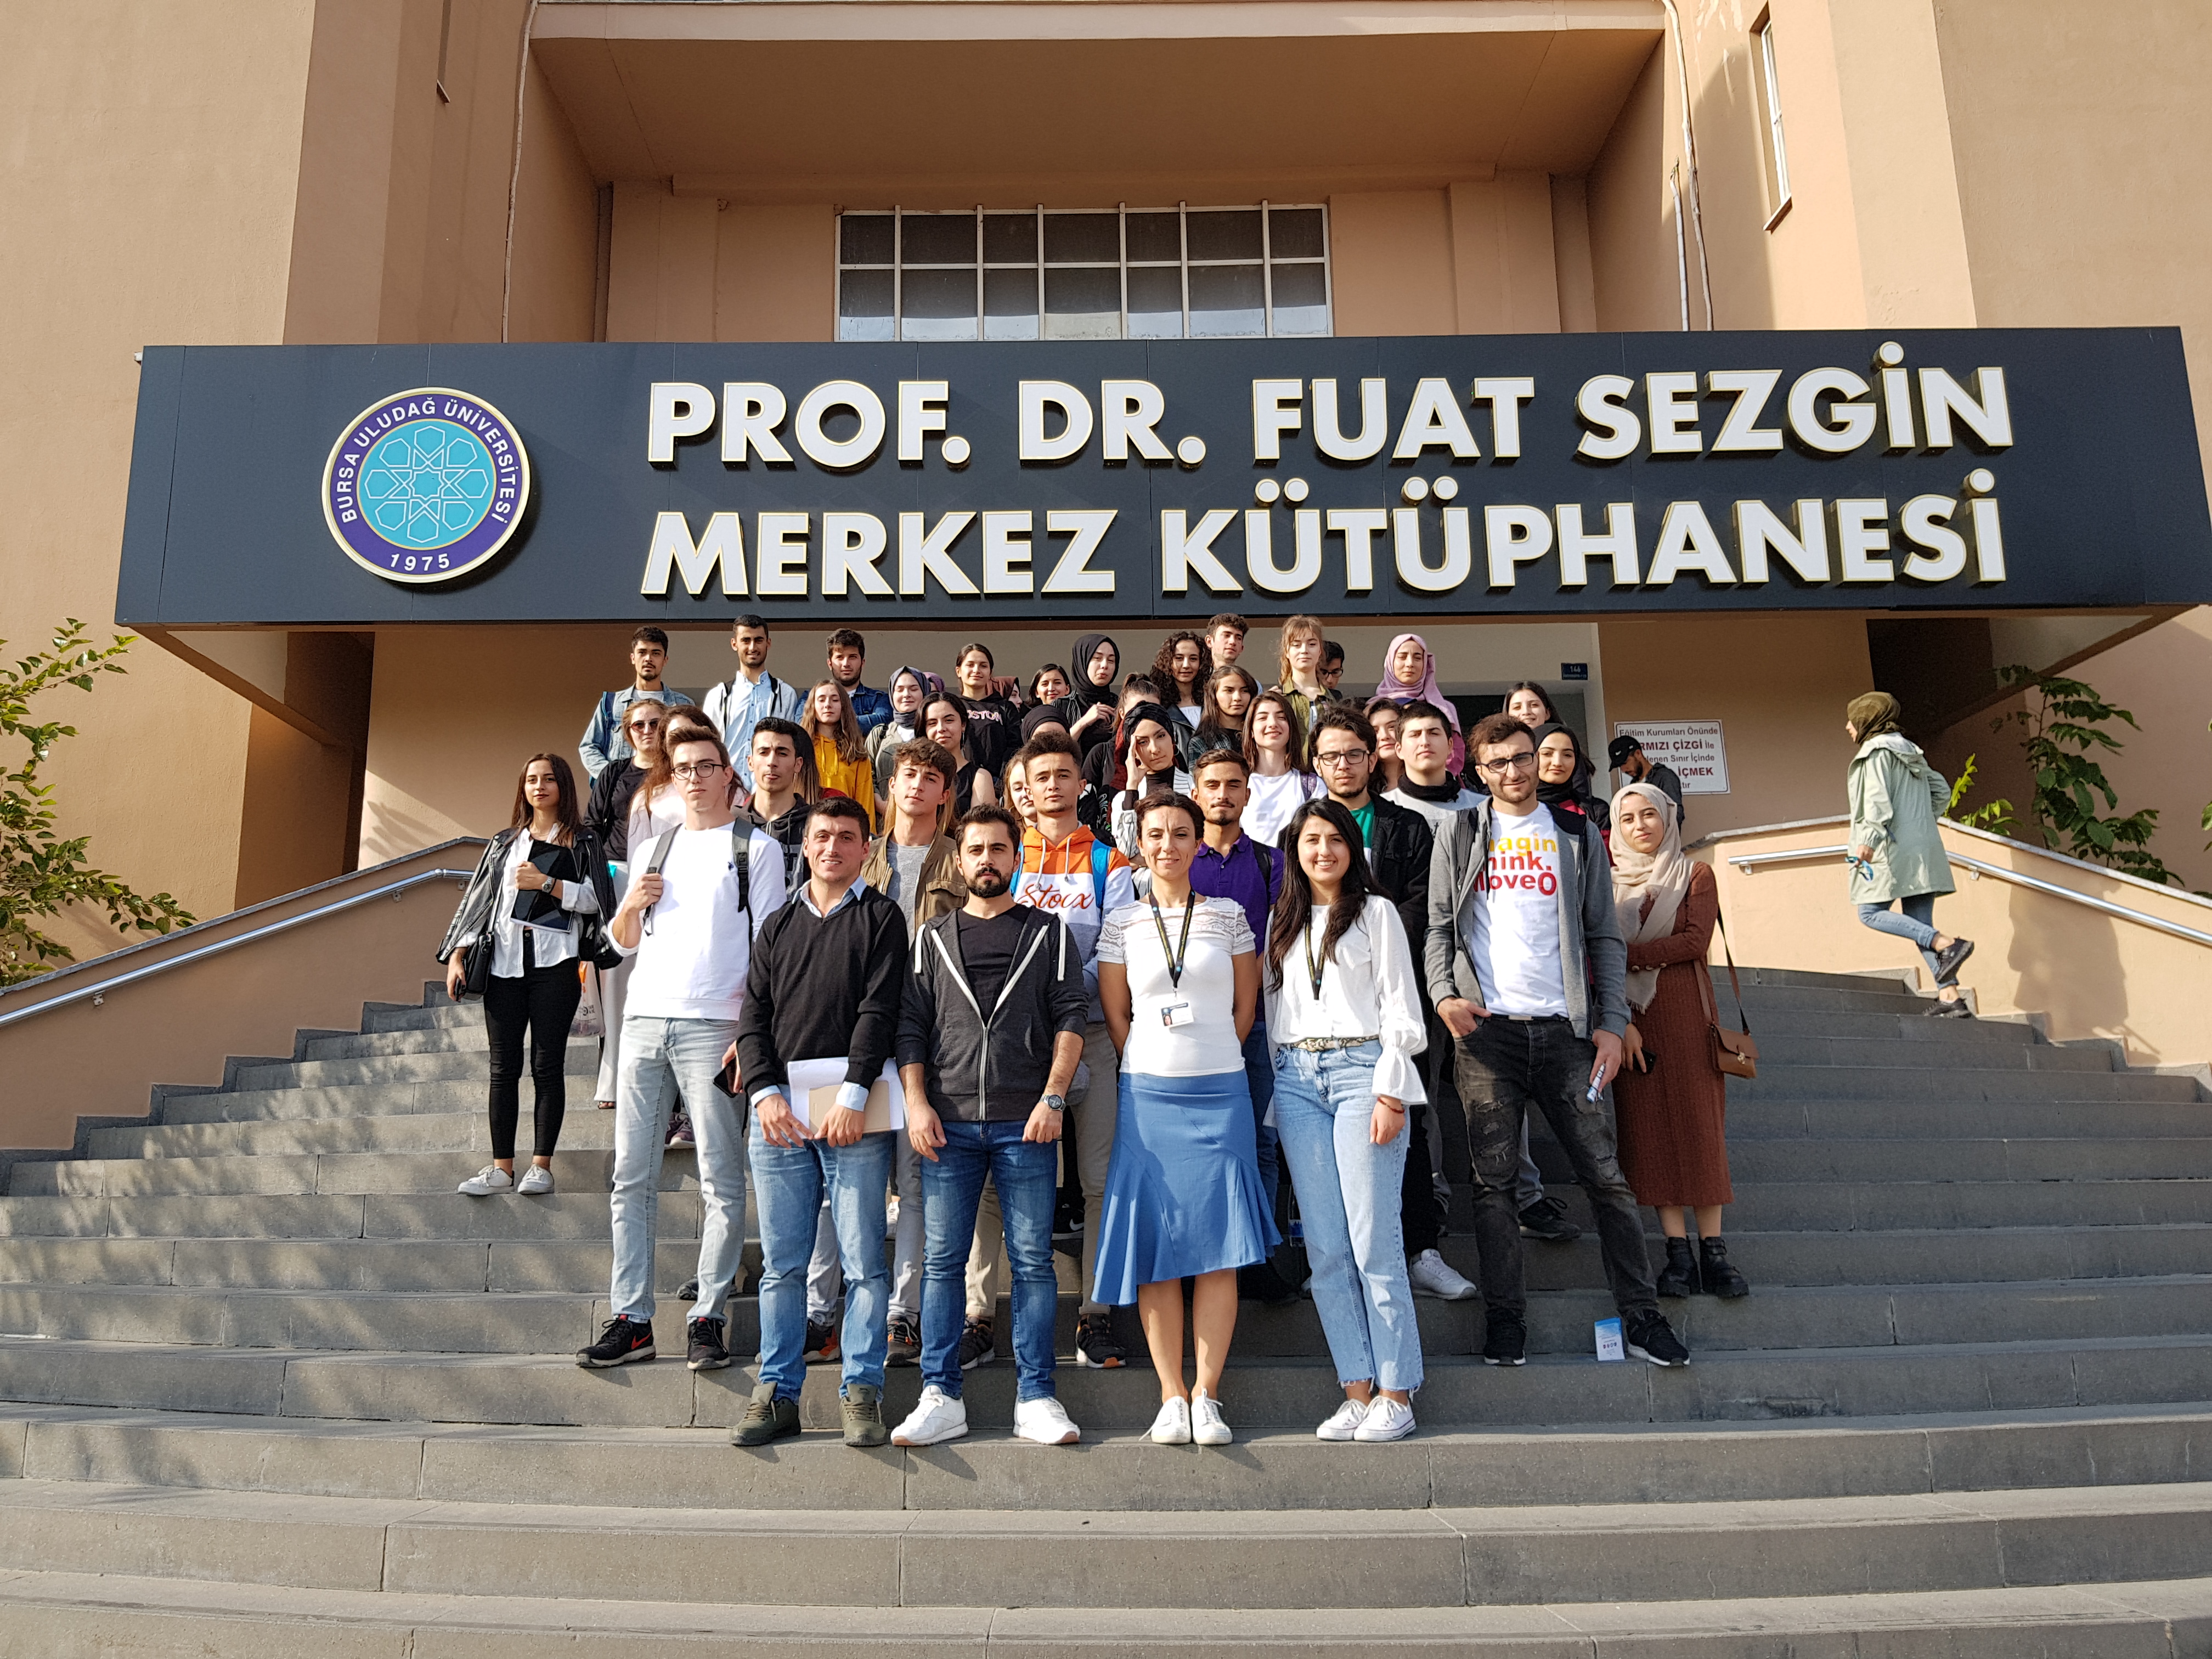  Coğrafya Bölümü 1. Sınıf Öğrencileri Bursa Uludağ Üniversitesi Prof. Dr. Fuat SEZGİN Merkez Kütüphanesinde    